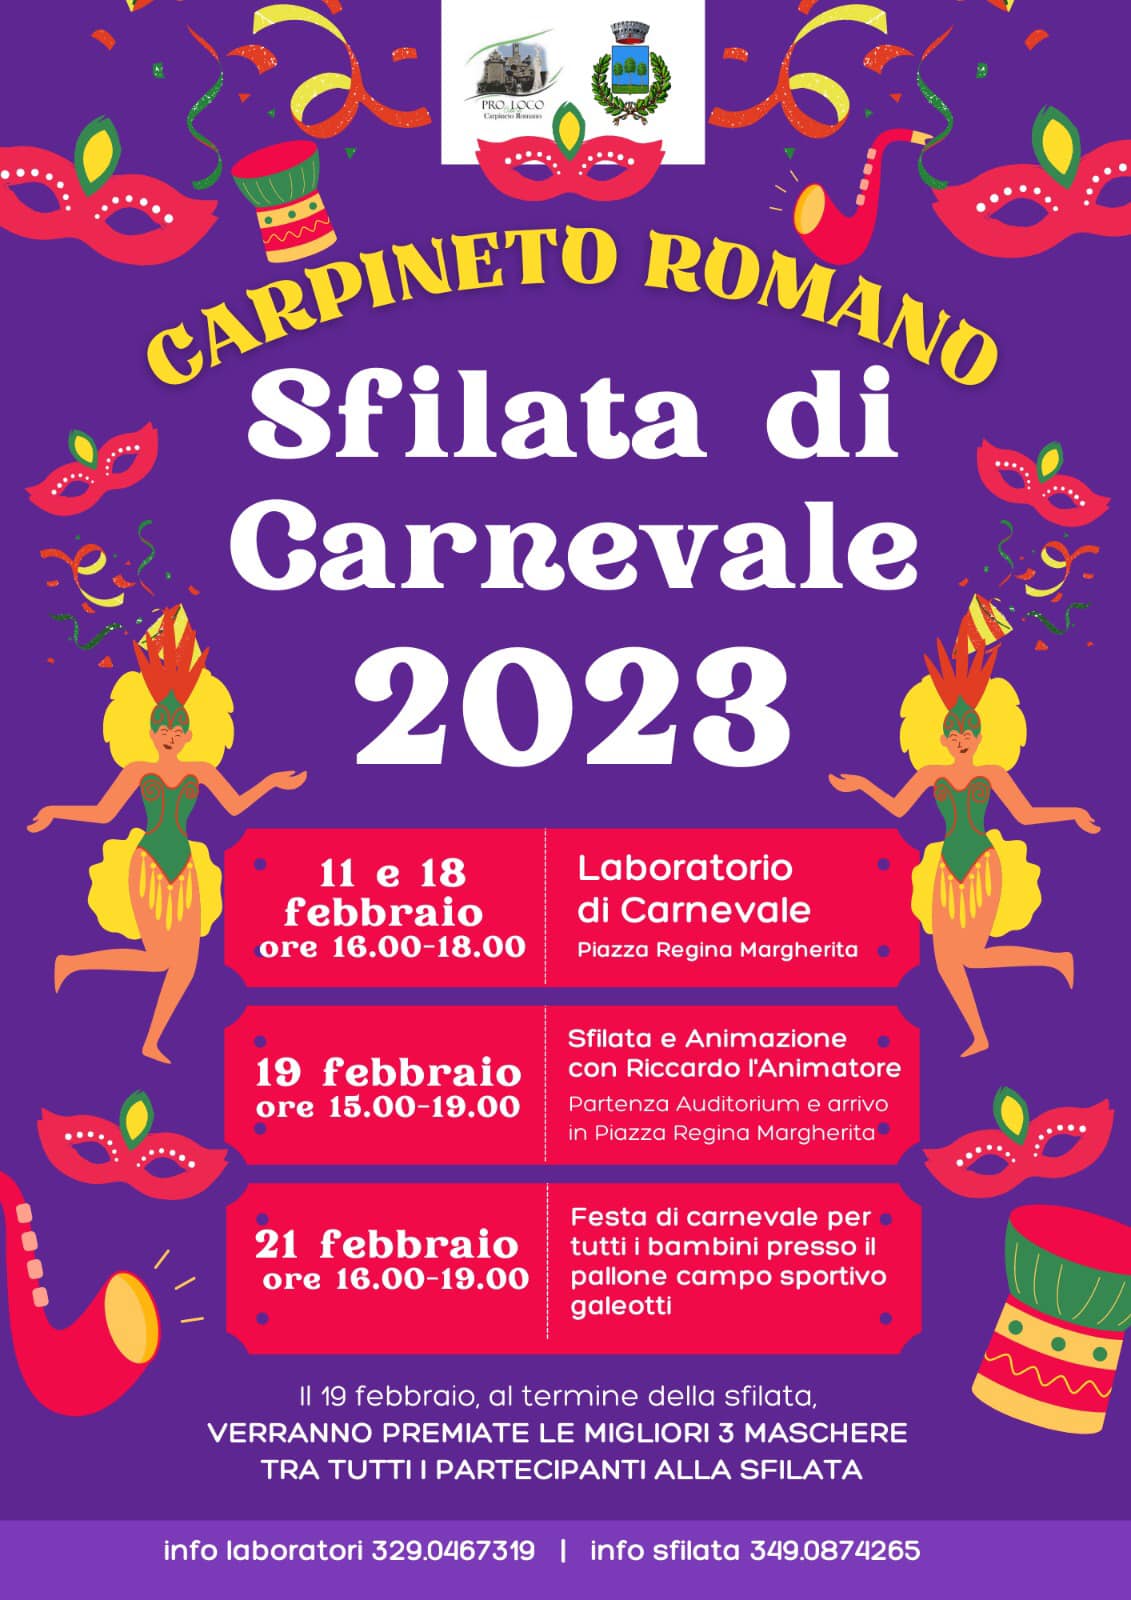 Carpineto Romano: Sfilata di Carnevale 2023 @ Carpineto Romano